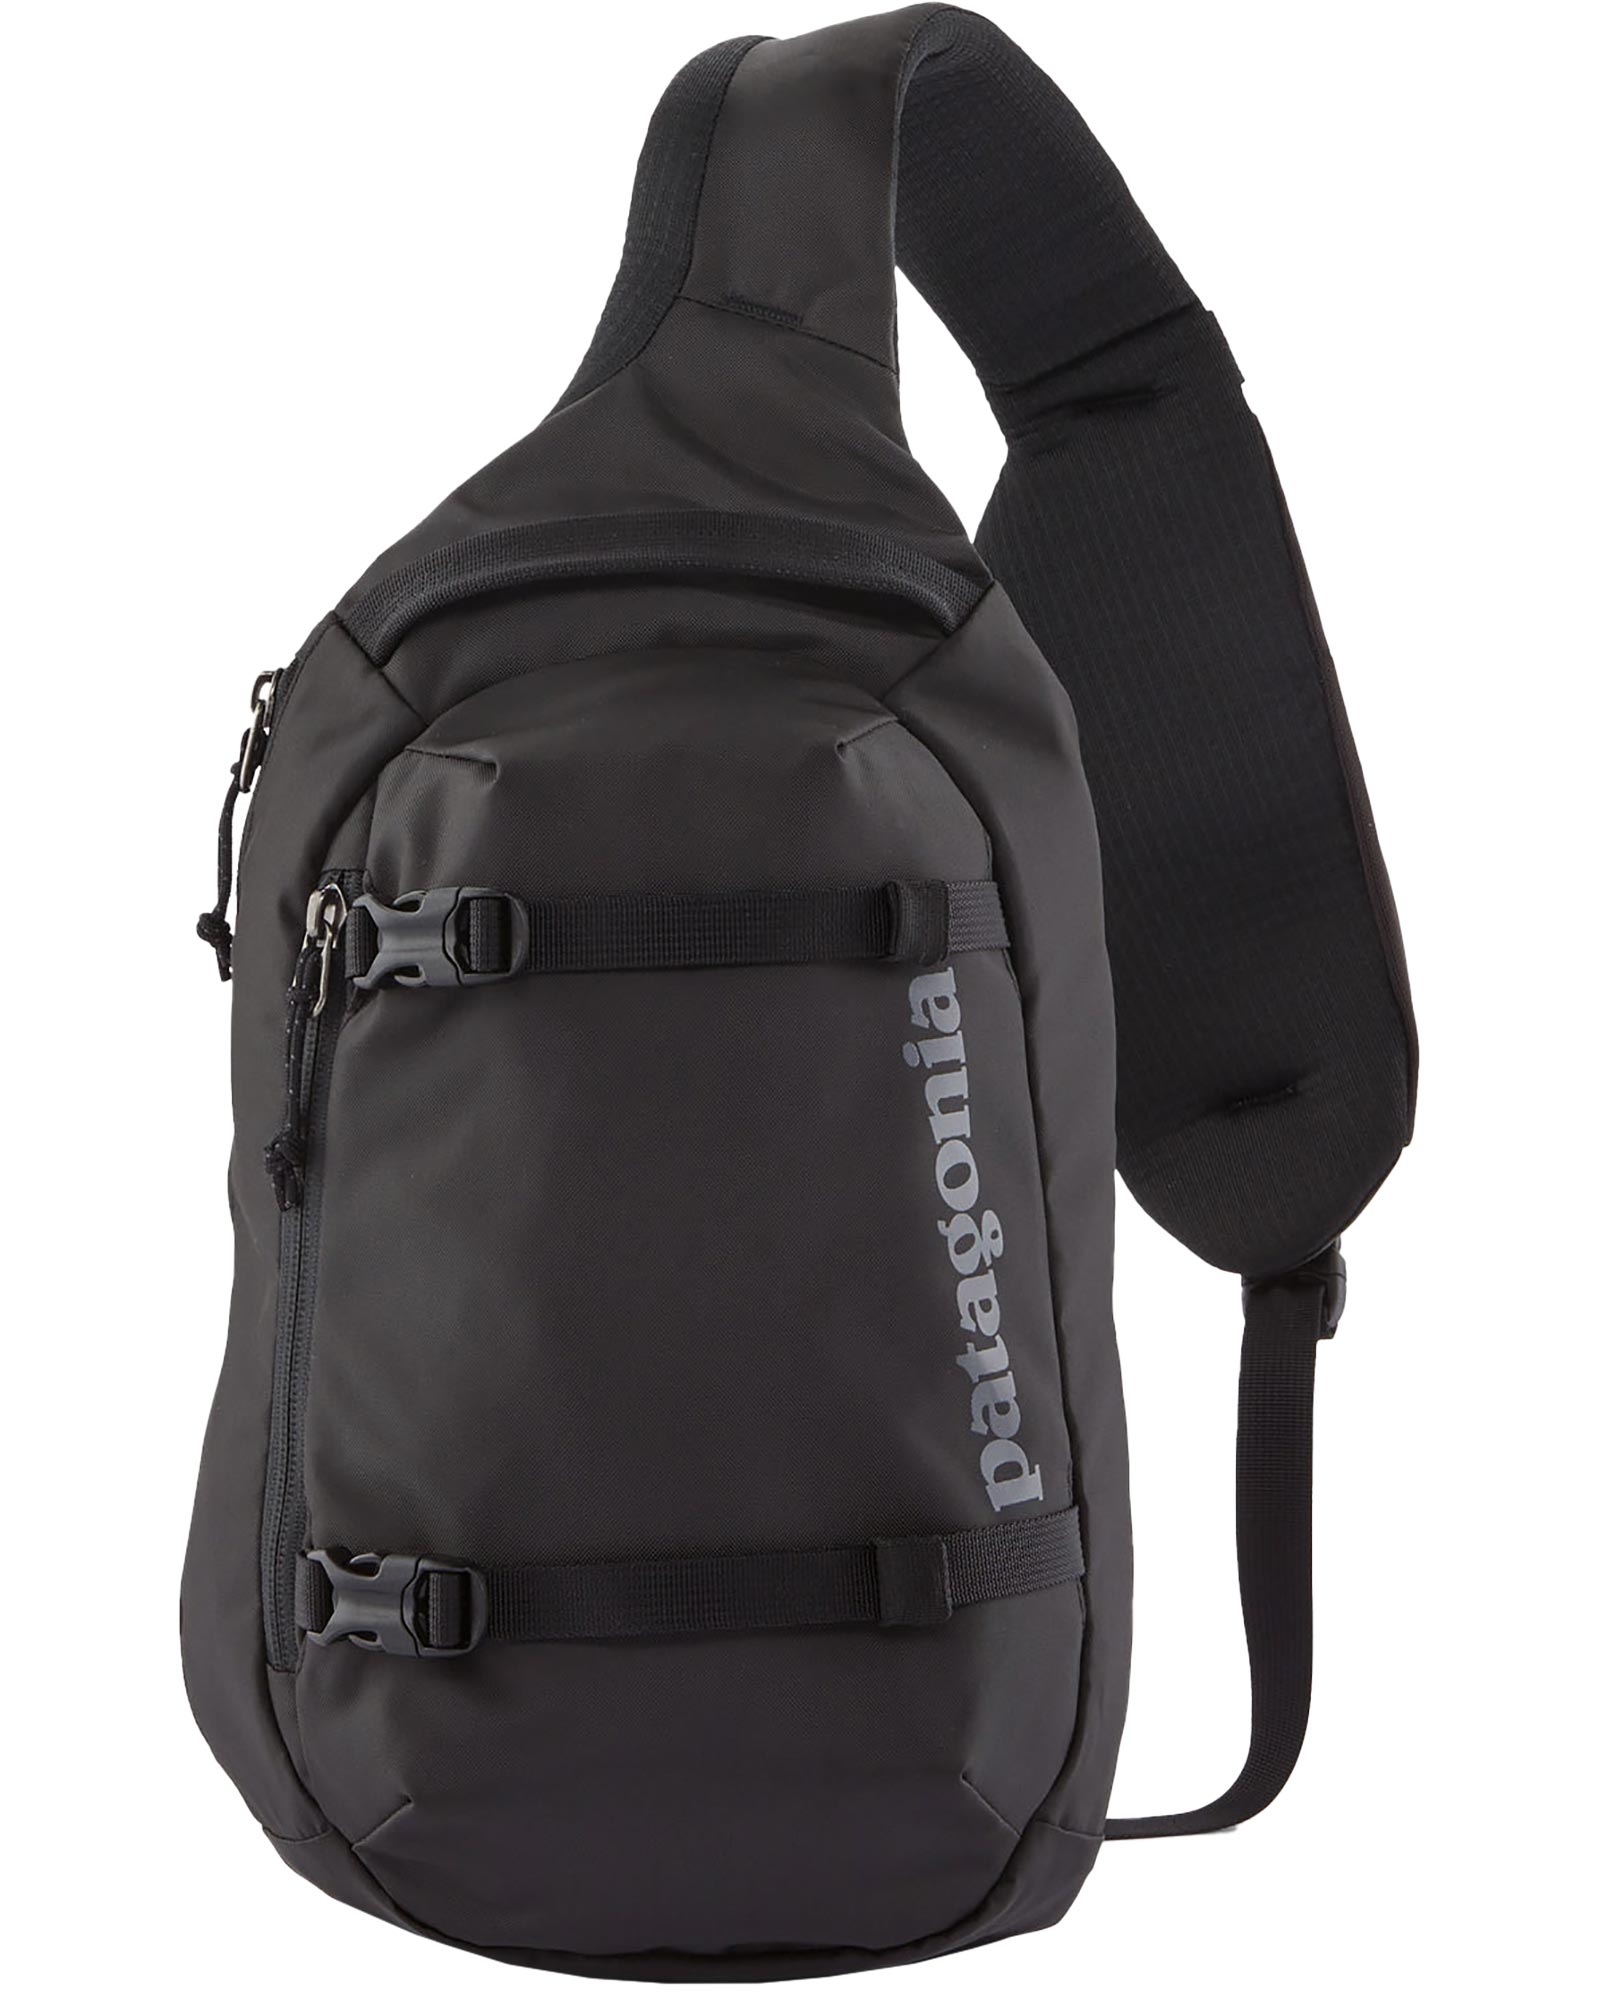 Patagonia Atom Sling Backpack - black